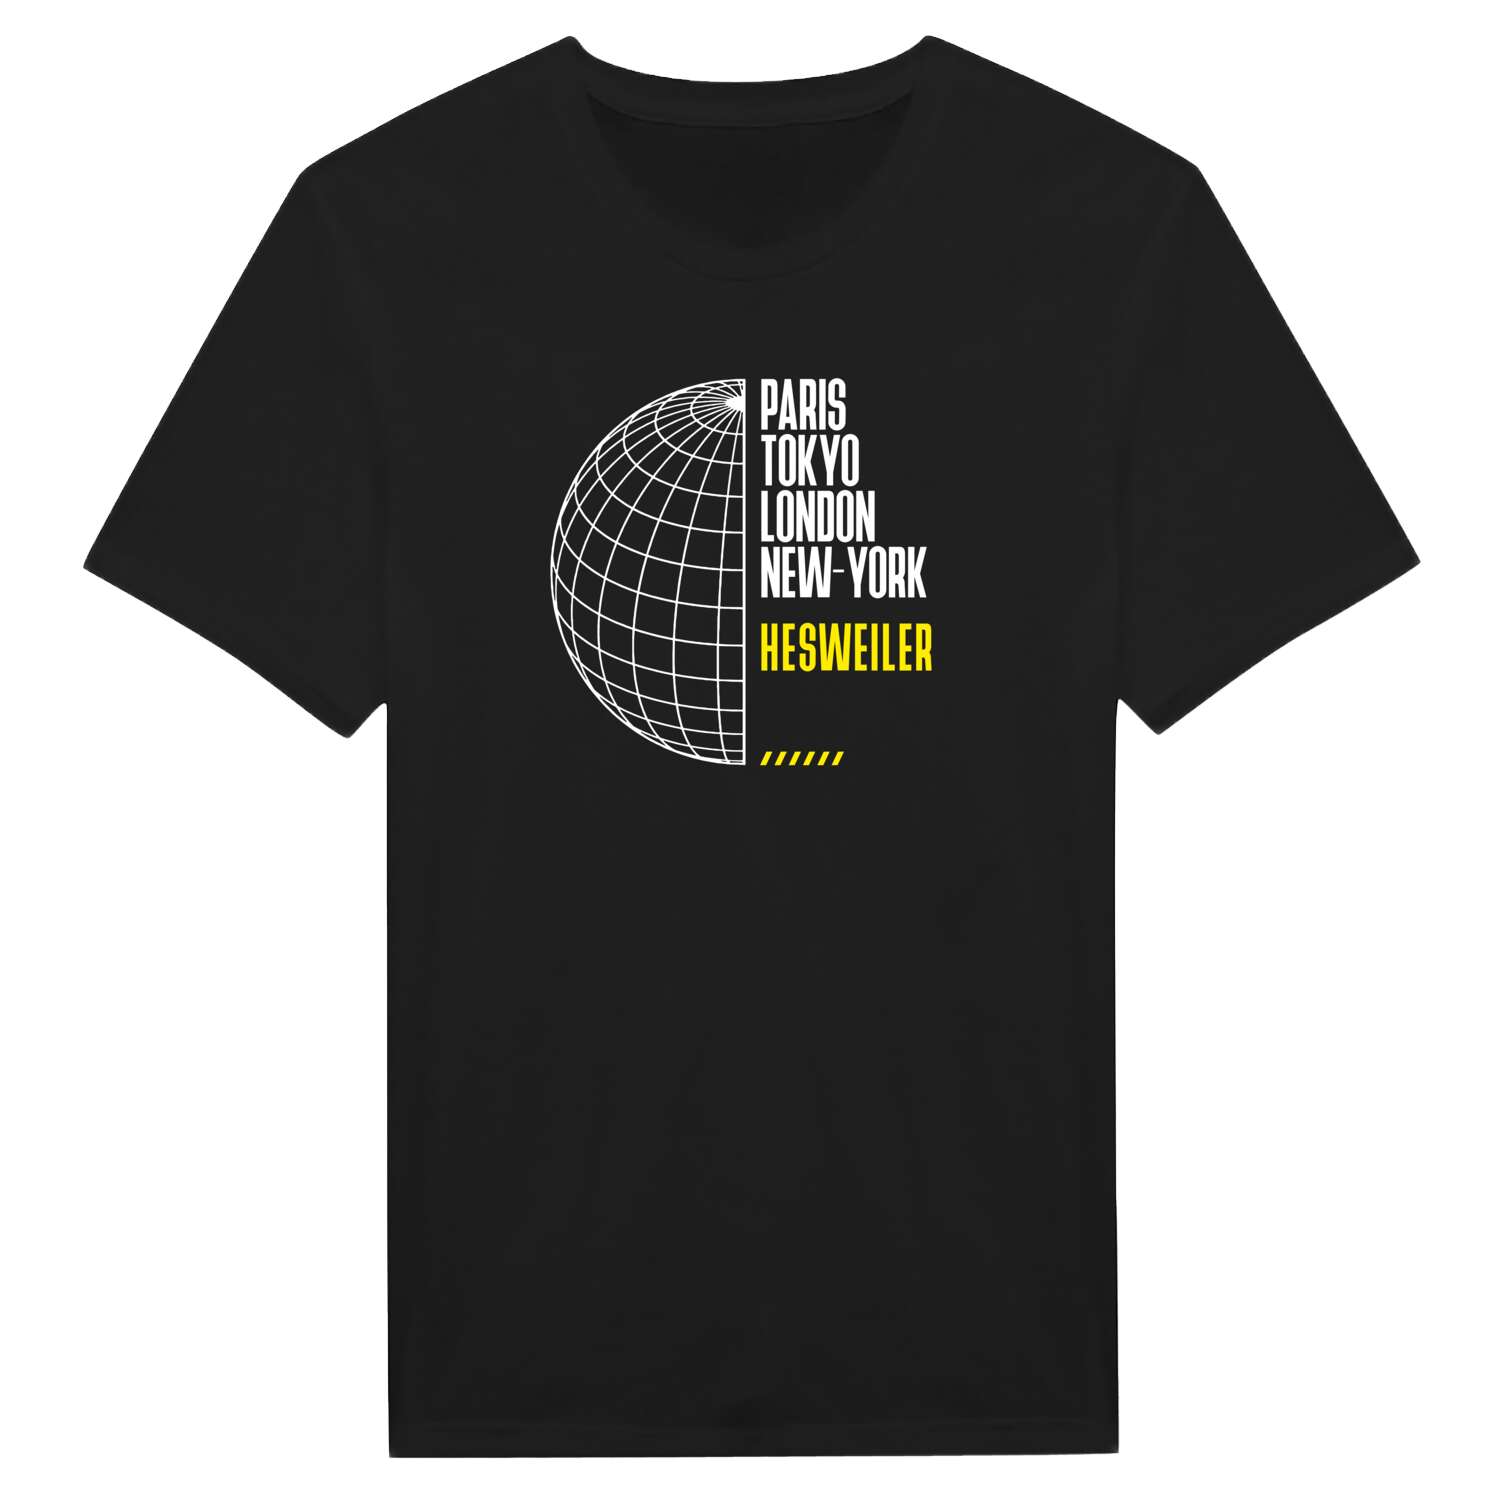 Hesweiler T-Shirt »Paris Tokyo London«